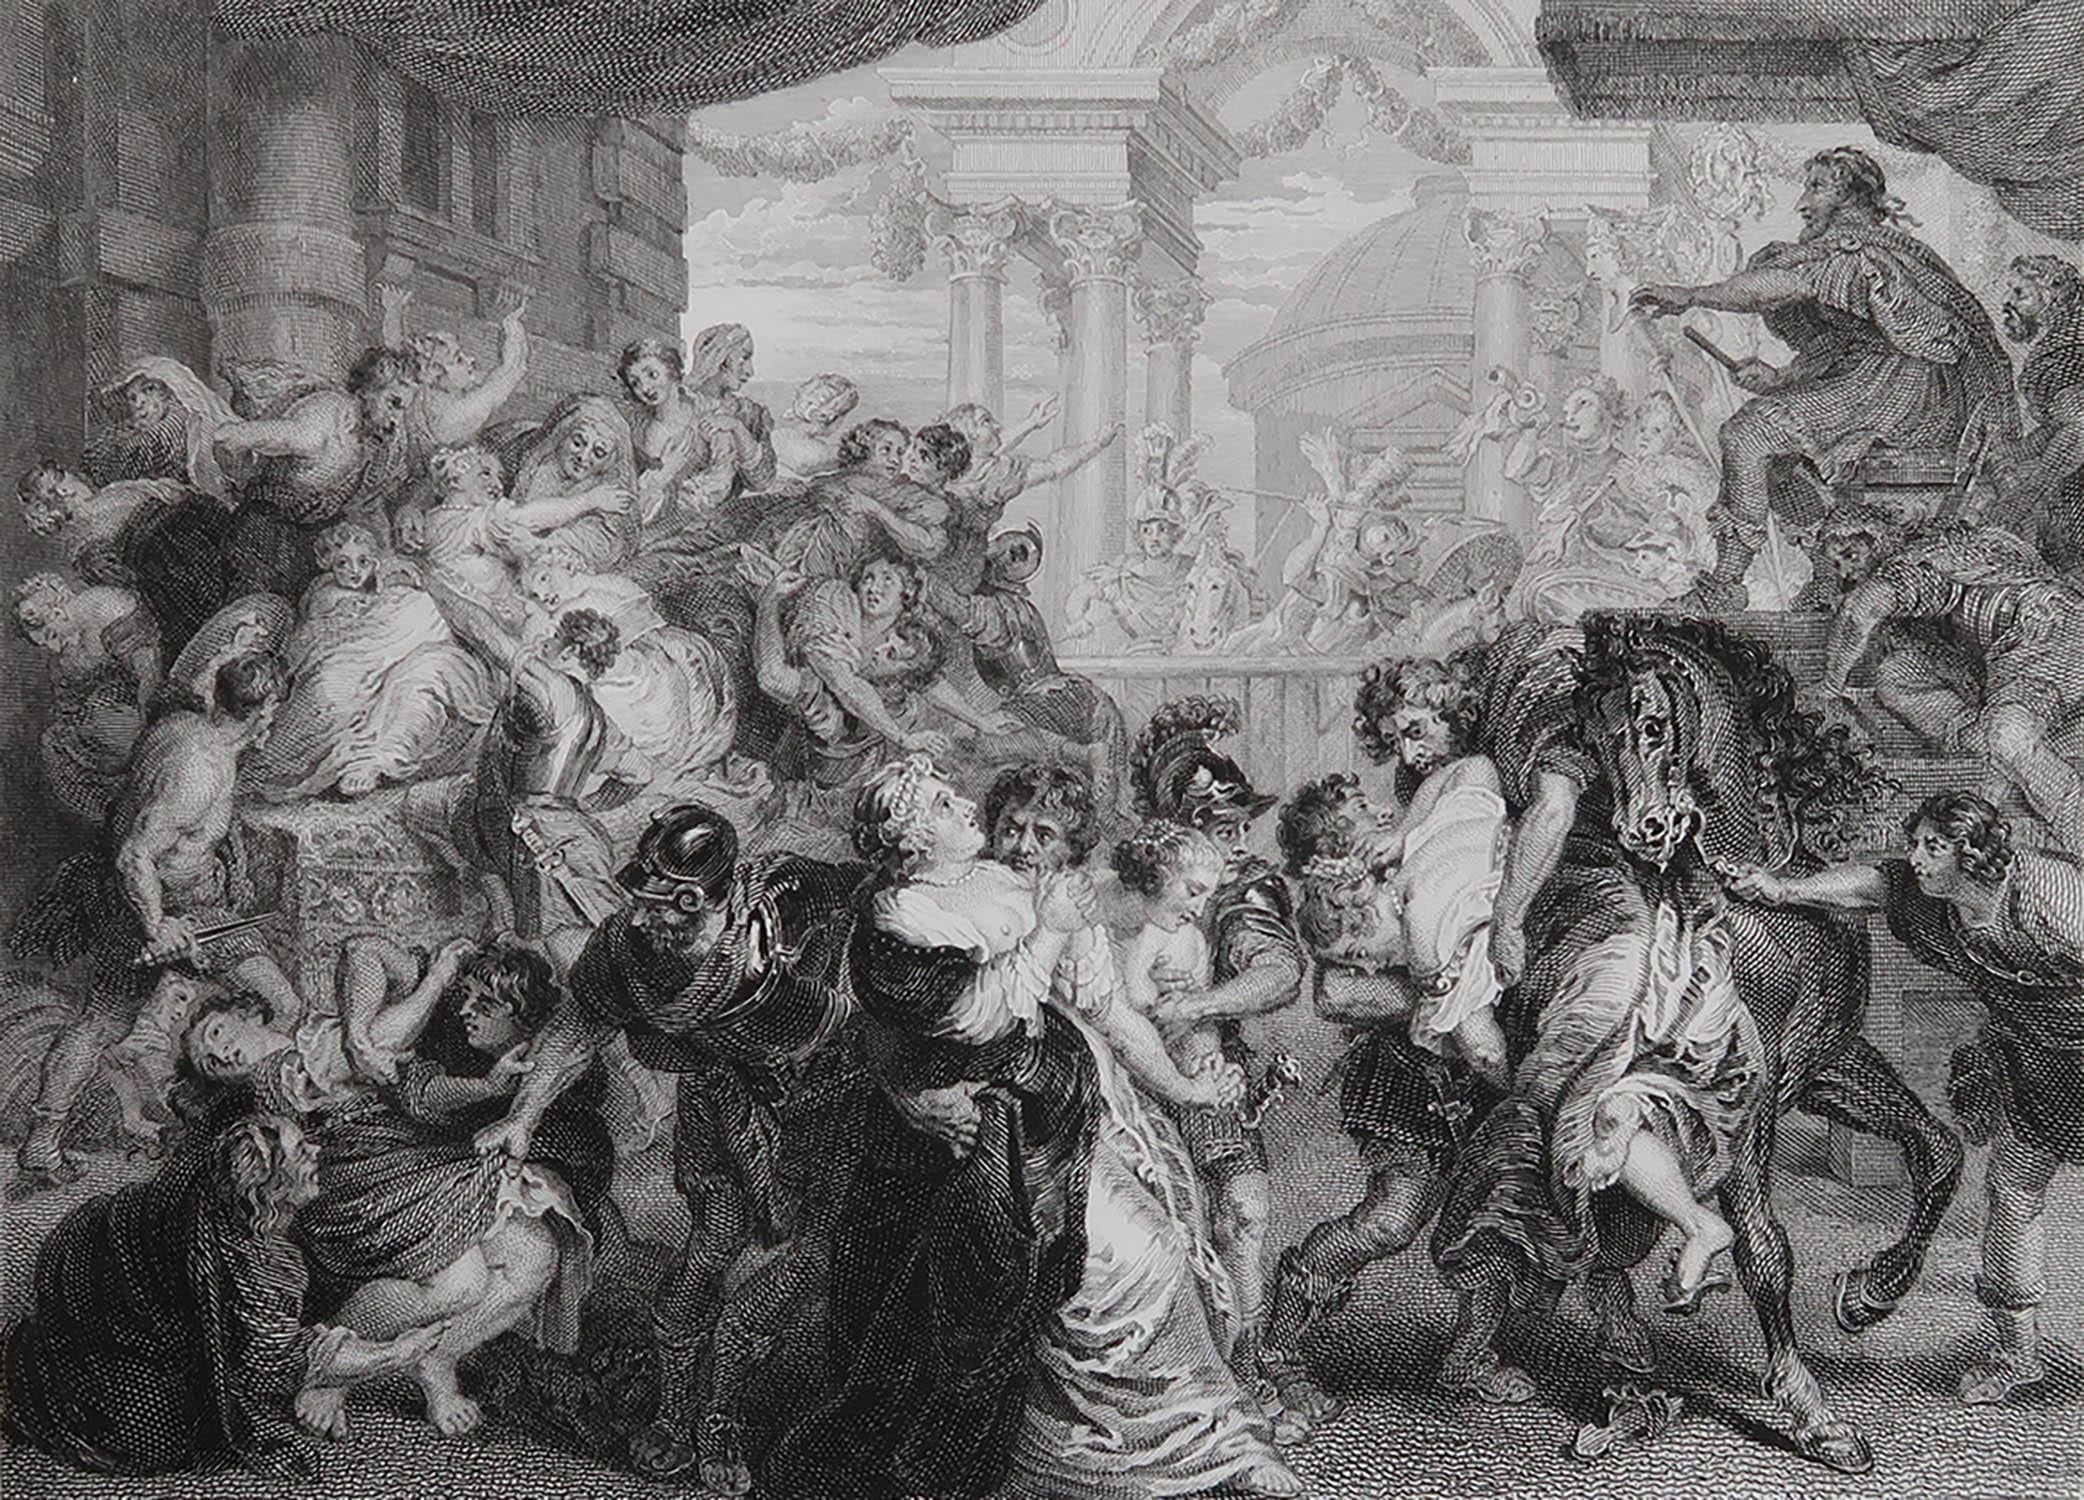 Wunderschönes Bild von The Rape of The Sabines

Feiner Stahlstich

Herausgegeben von Jones & Co. C.1840

Ungerahmt.

